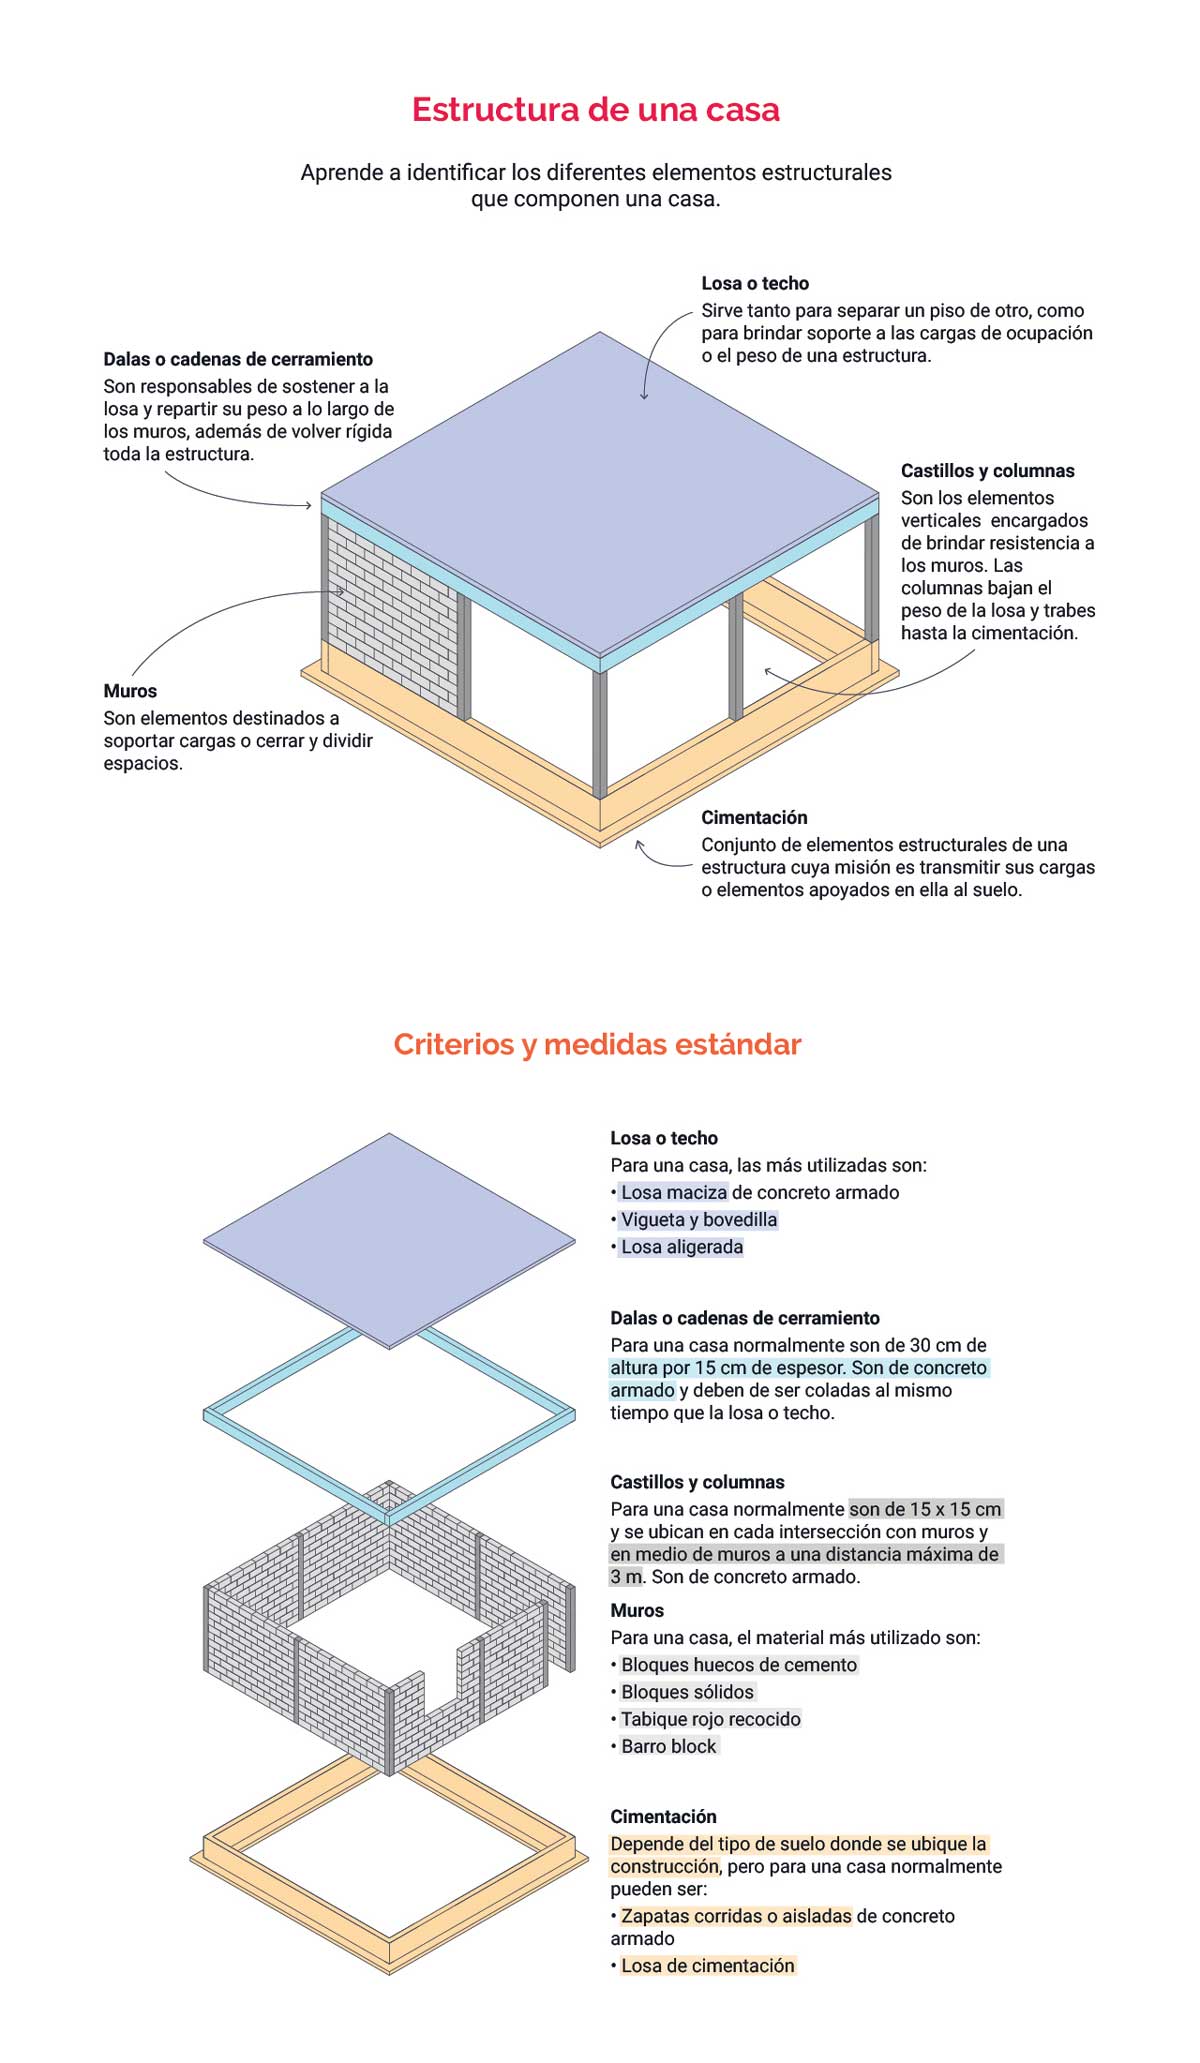 Elementos estructurales de una casa: cimentación, castillos y columnas, muros, dalas o cadenas de cerramiento, losa o techo